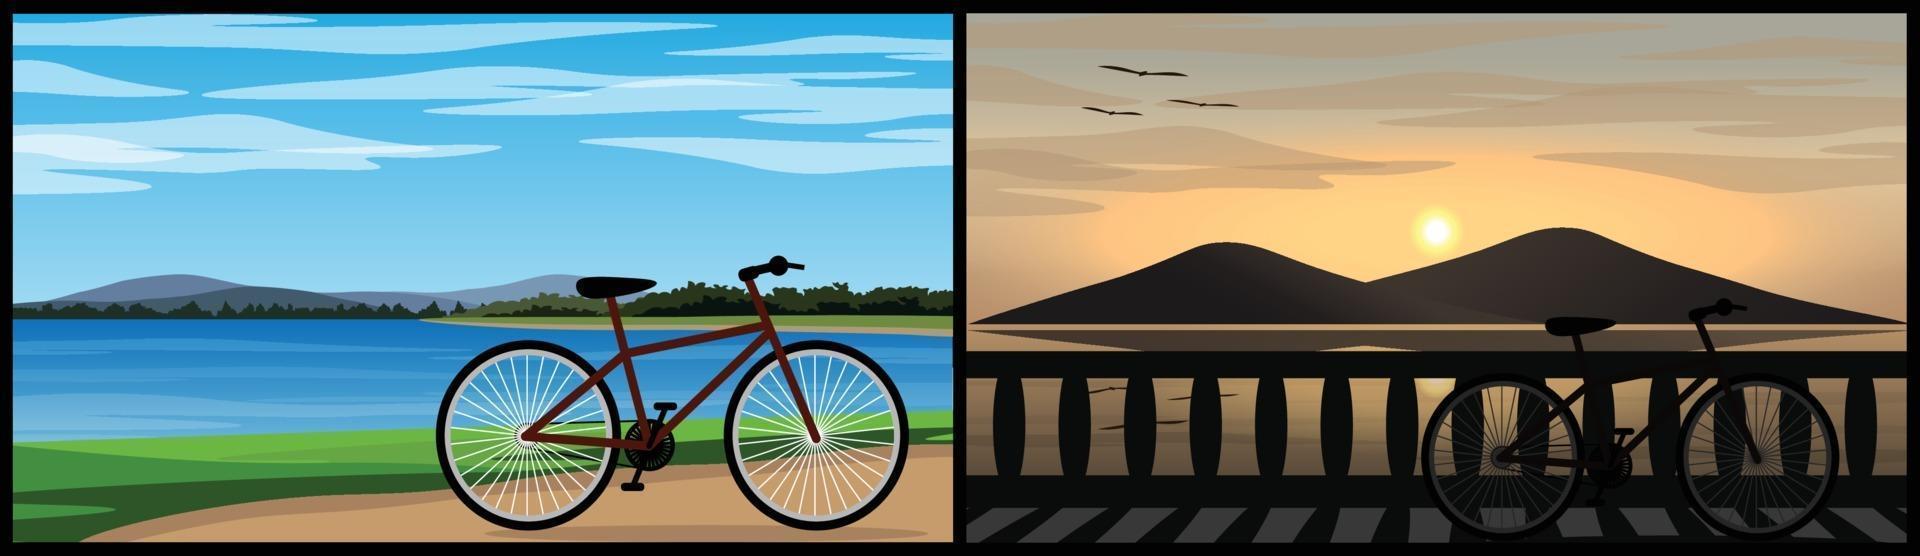 duas imagens de uma bicicleta estacionada perto de um lindo lago natural vetor